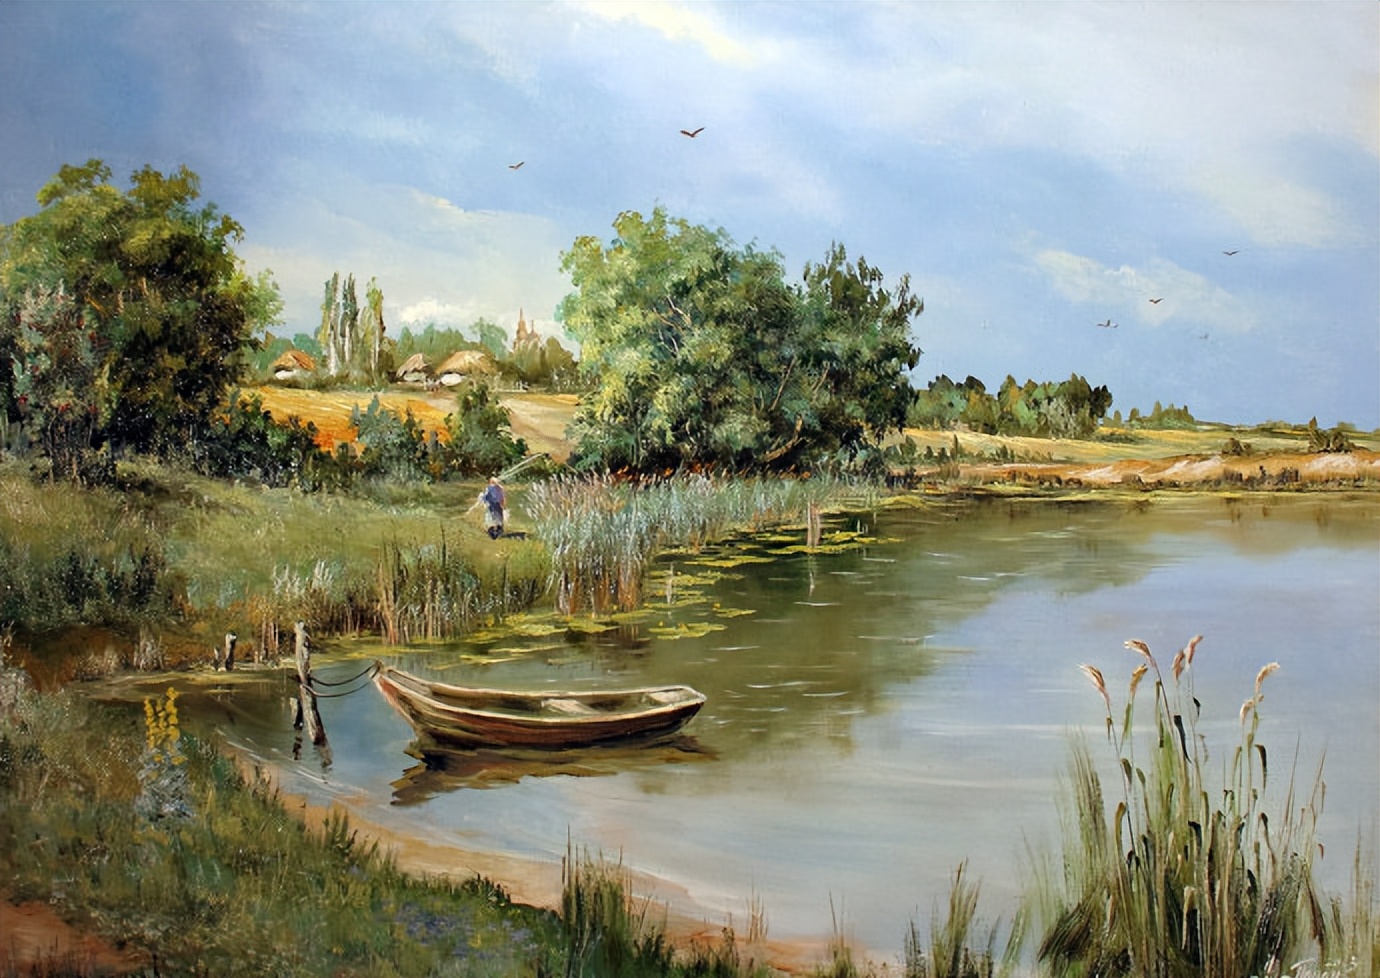 田园生活,乡野风景︱俄罗斯画家尤里基德油画